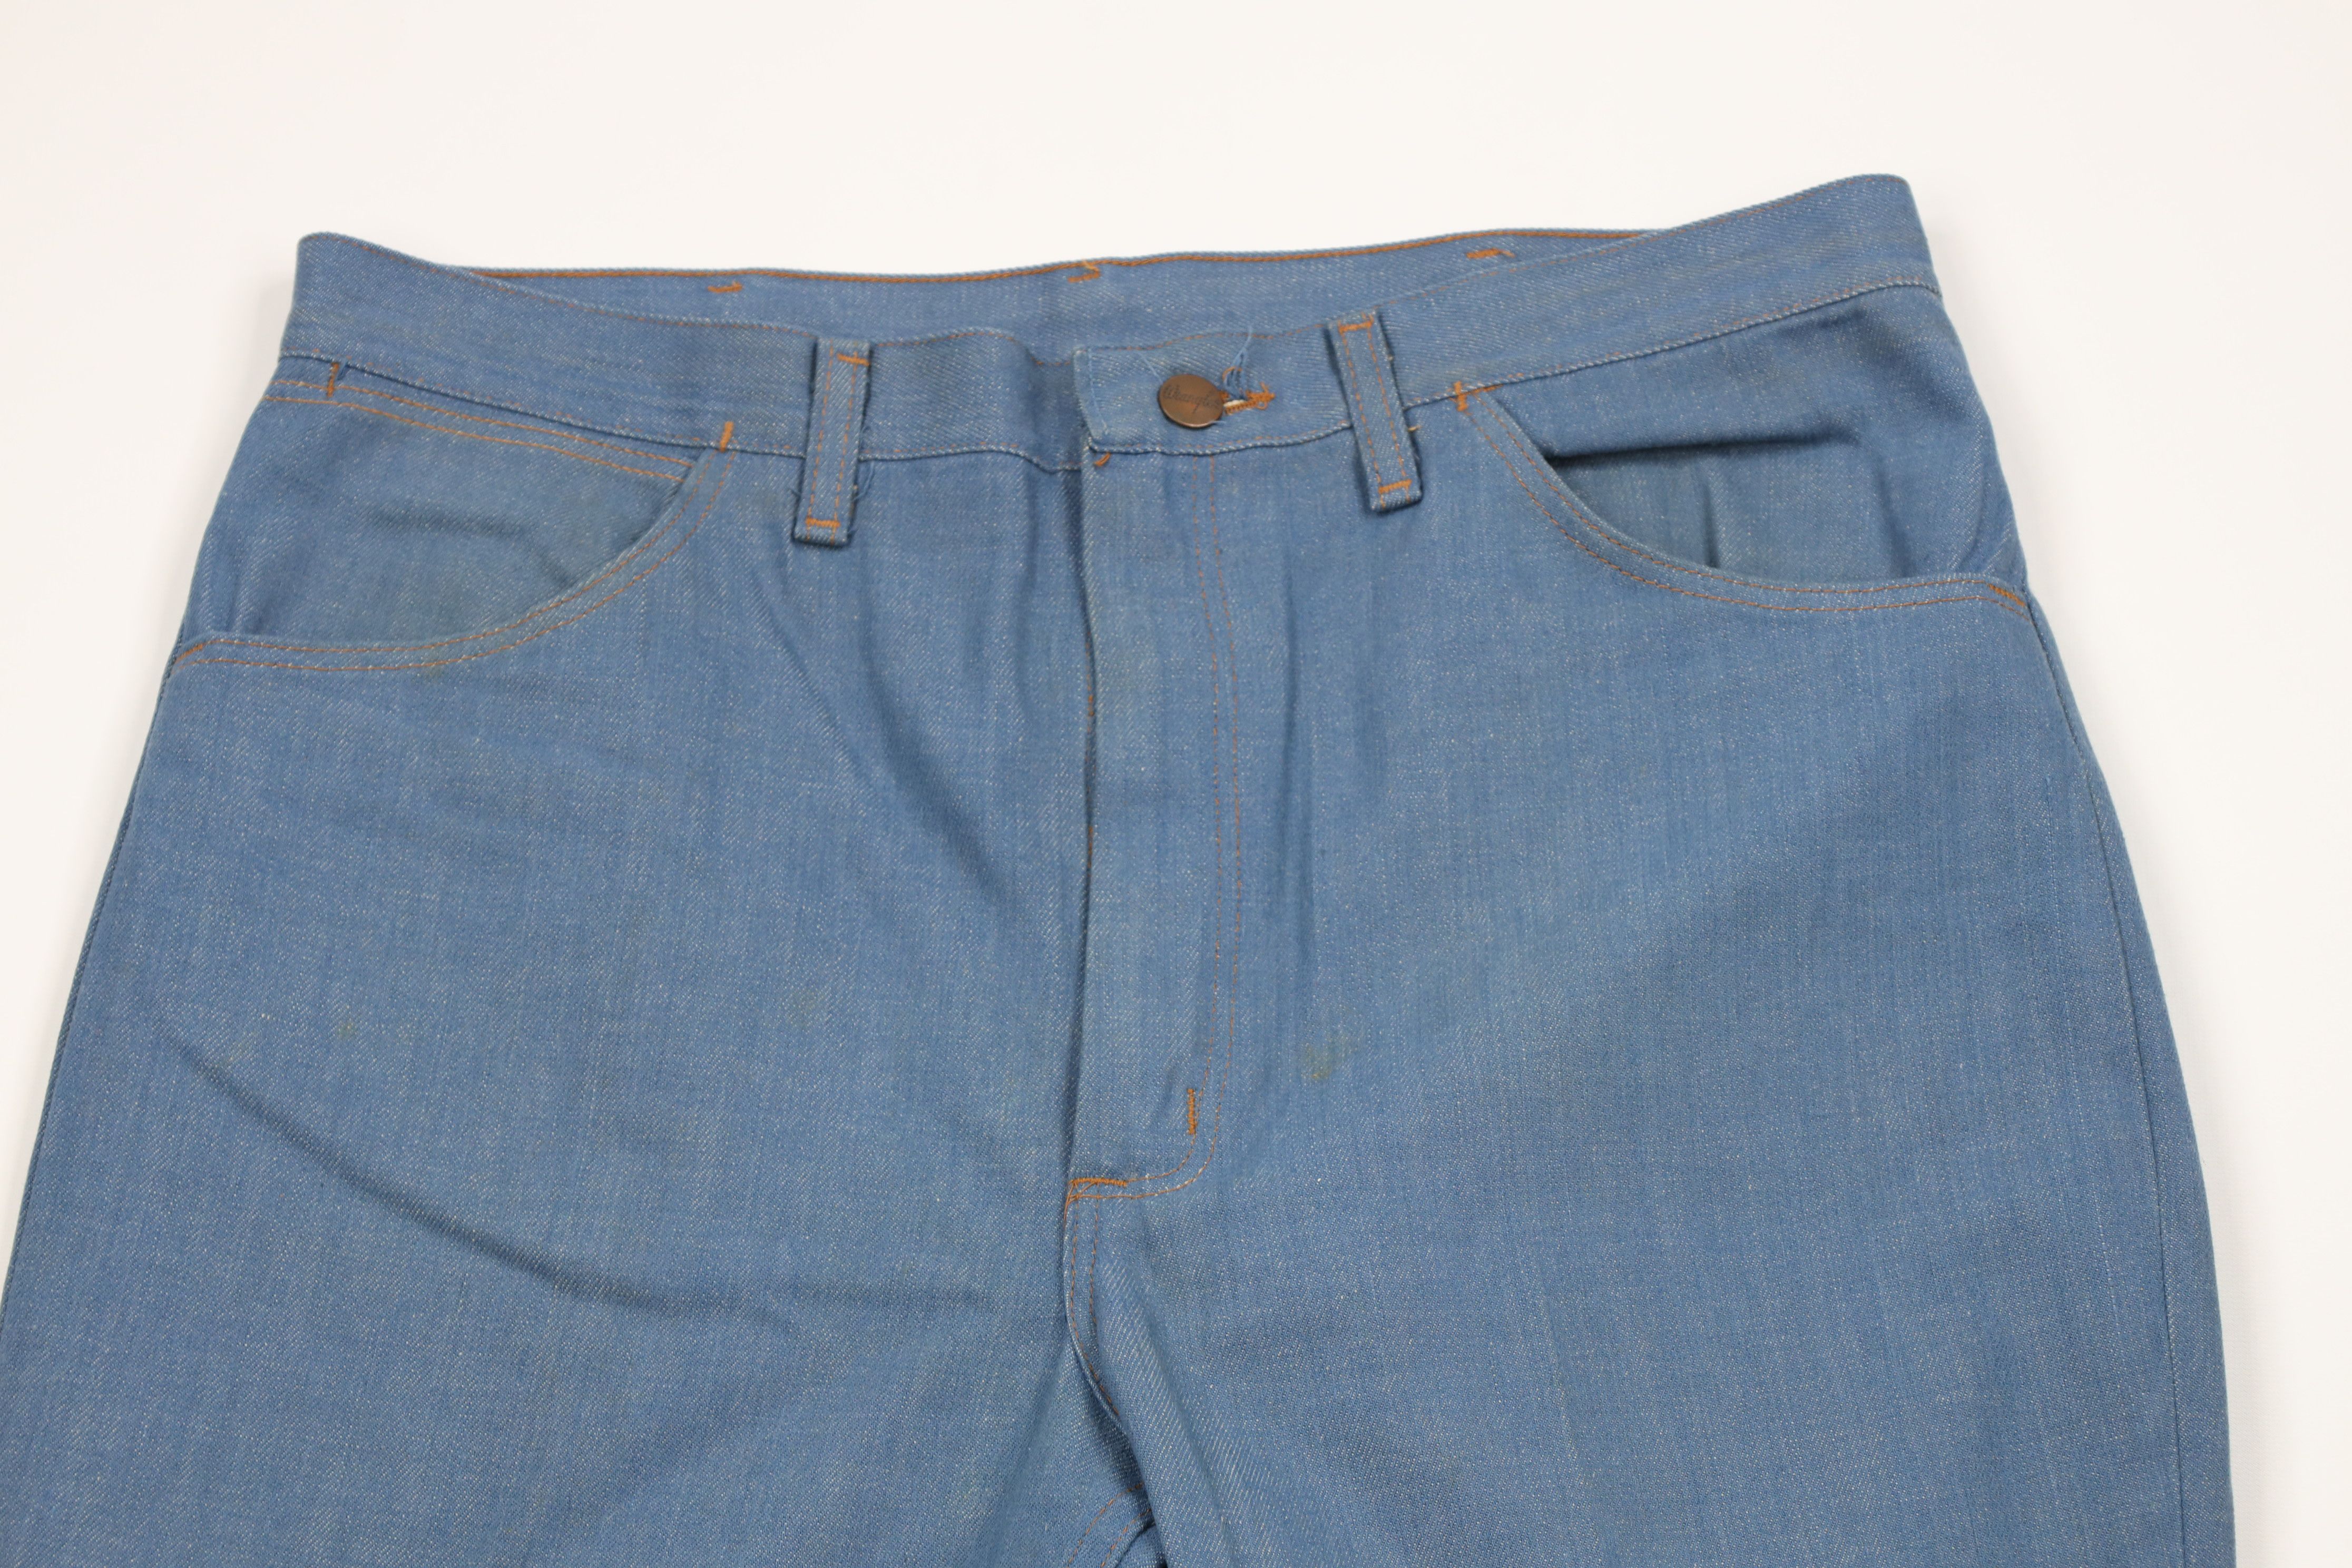 Vintage Vintage 70s Wrangler Wide Leg Bell Bottoms Denim Jeans USA Size US 34 / EU 50 - 2 Preview